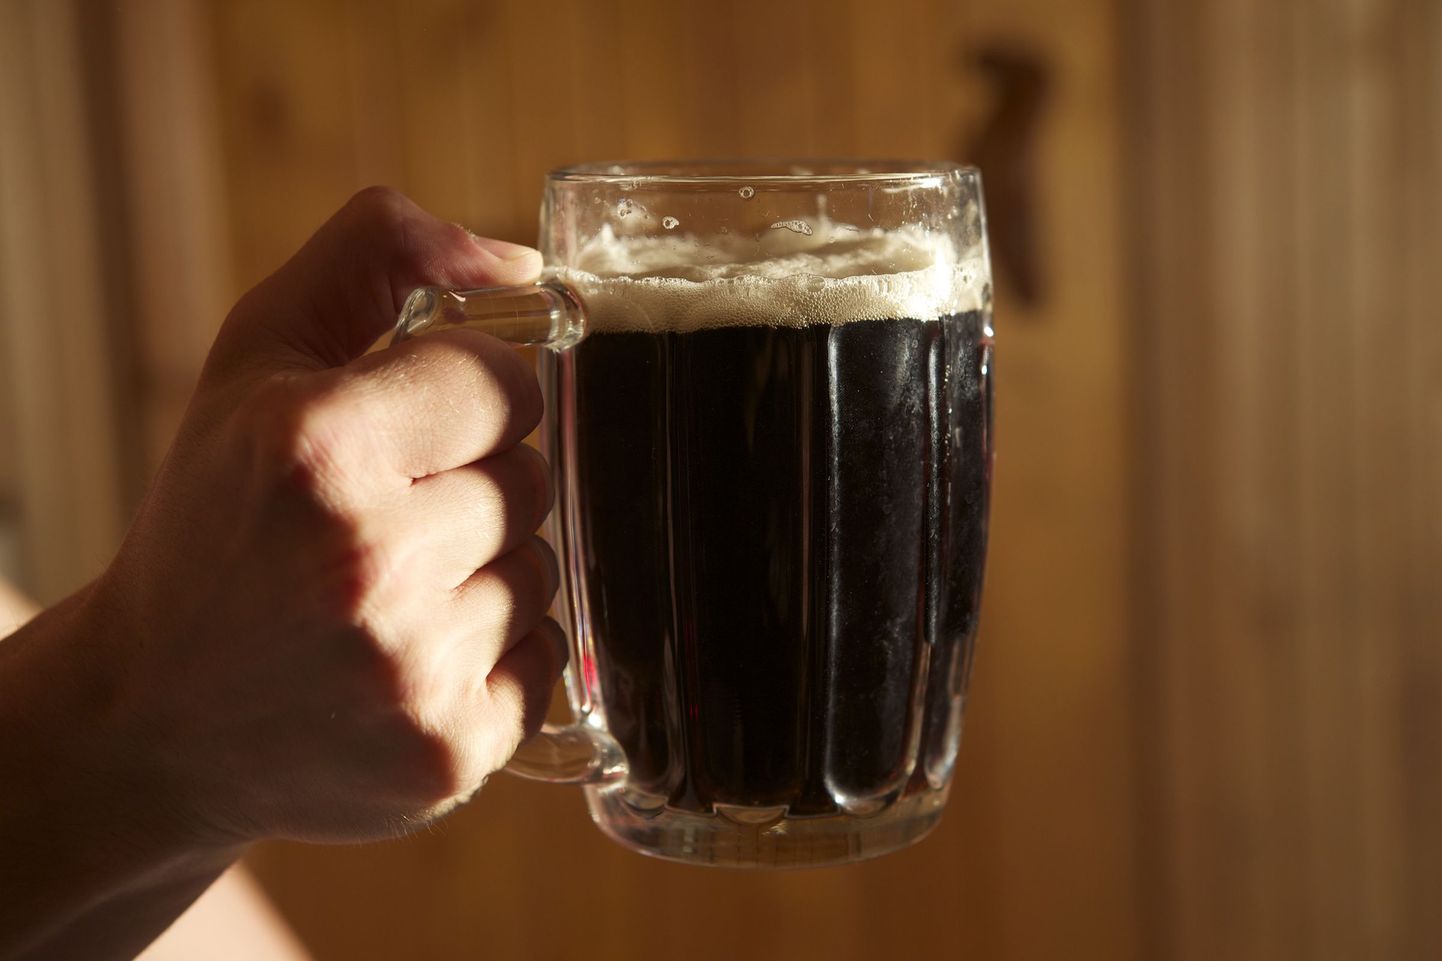 Kange õlu on soomlaste üks ostetumaid kaupu.